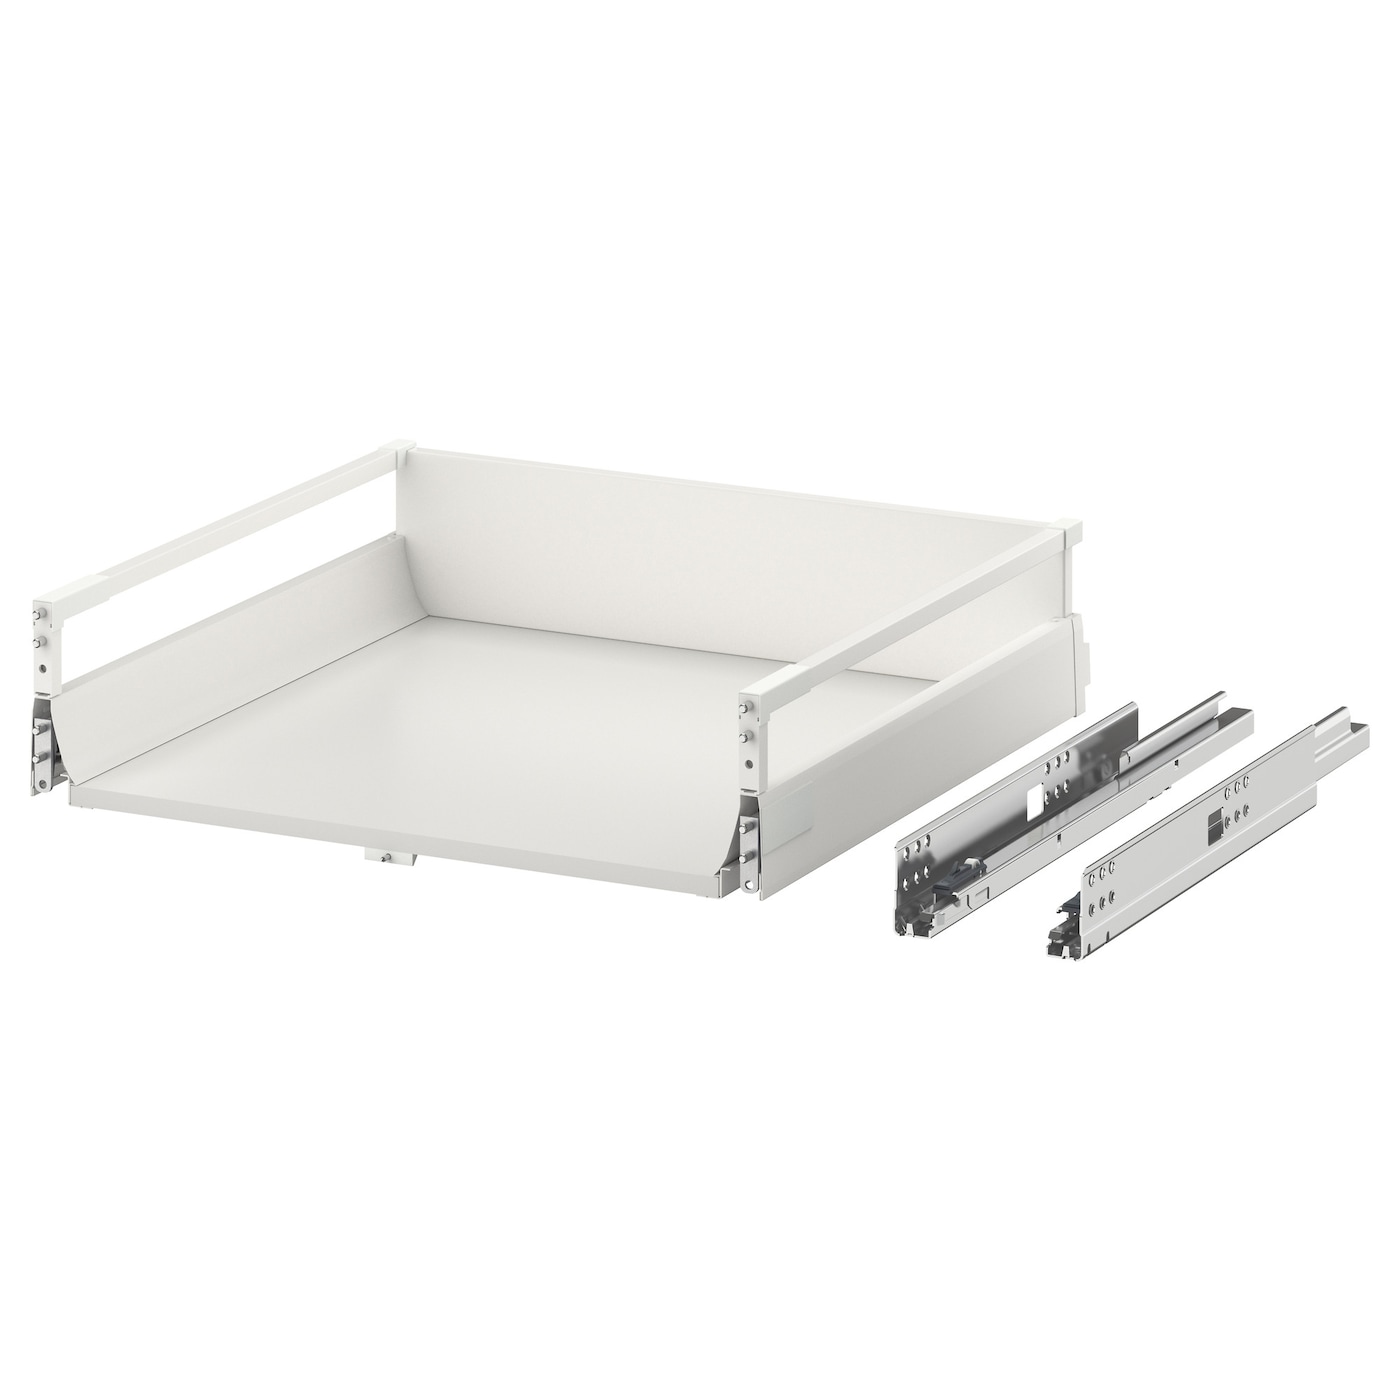 Ящик средний с точечным открыванием -  EXCEPTIONELL IKEA/ ЭКСЕПТИОНЕЛЛЬ  ИКЕА, 56,4х14,4 см, белый